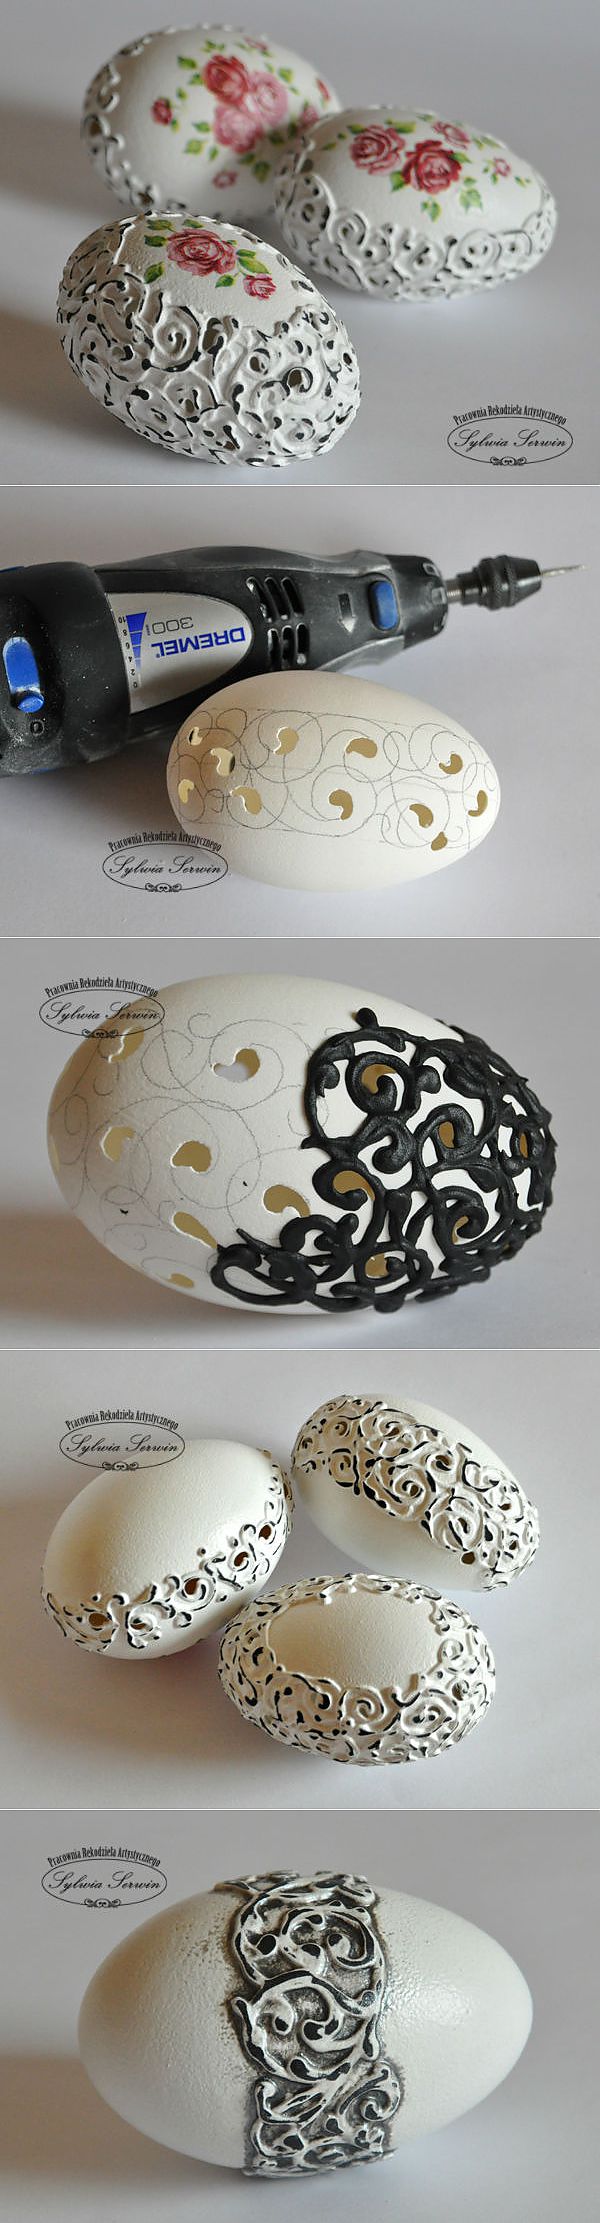 Декор пасхального яйца в стиле shabby-chic. МК с фото..